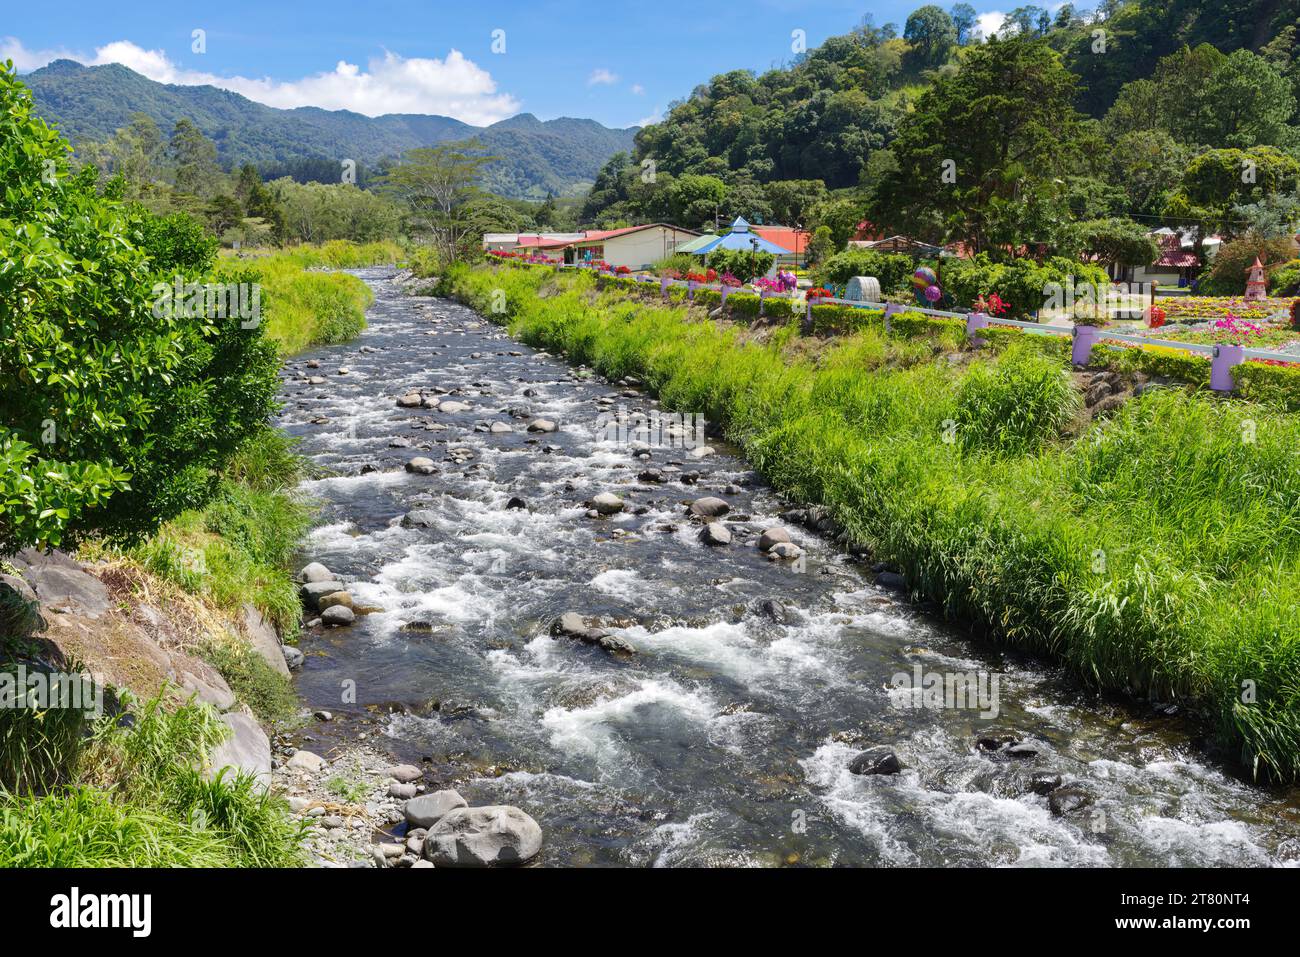 Caldera river shown in the town of Boquete, Chiriqui province, Panama. Stock Photo